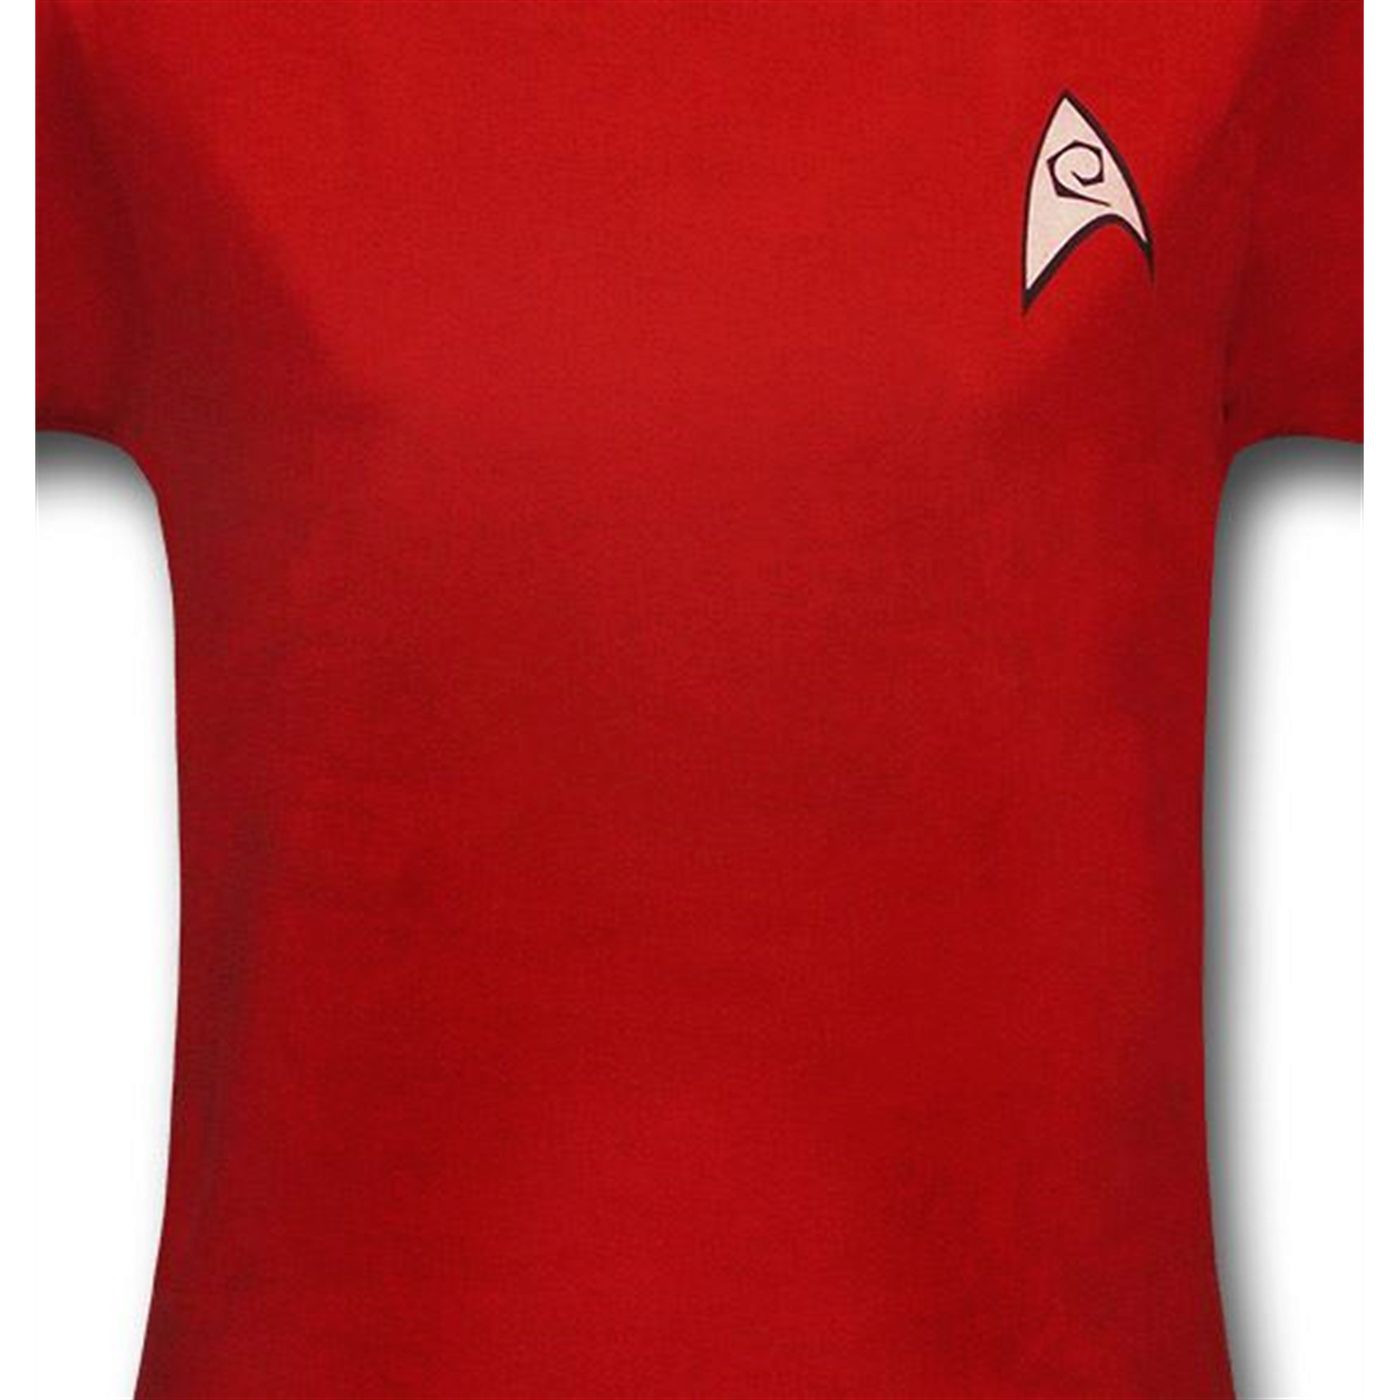 Star Trek Women's Security Uniform T-Shirt